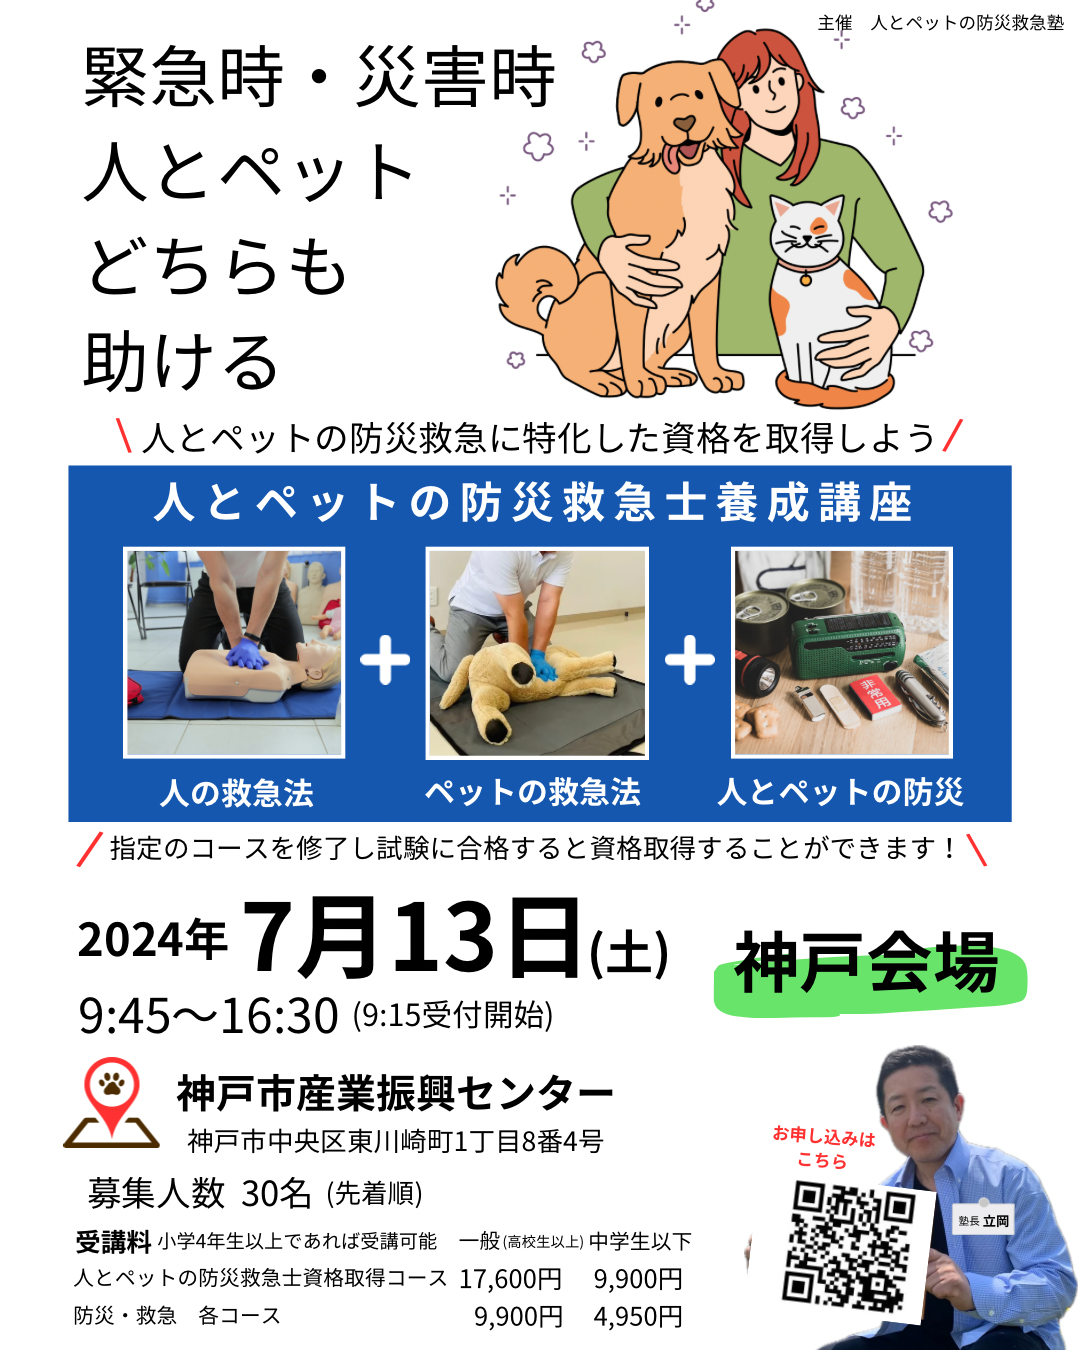 人とペットの防災救急士資格取得講習会(神戸会場)